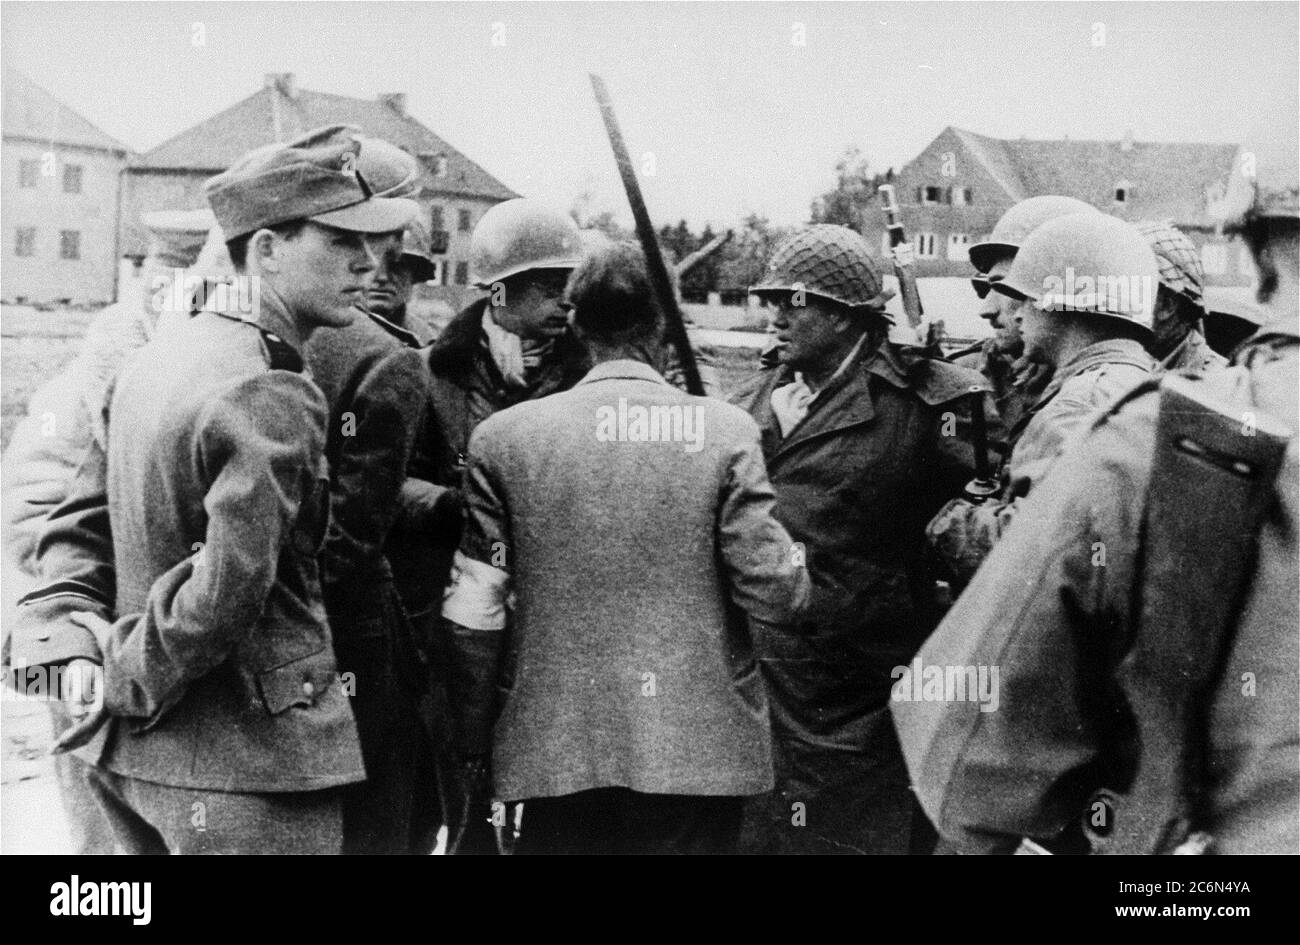 Die Übergabe des Konzentrationslagers Dachau an amerikanische Streitkräfte der 42. Infanterie-Division der Armee, 29. April 1945 in Dachau, Deutschland. Von links nach rechts sind abgebildet: Ein Helfer der Nazi-SS LT. Wickert, der das Lager aufgegeben hat; LT. Wickert (teilweise von seinem Adjutanten versteckt); Paul M.G. Levy, ein belgischer Journalist, der als Dolmetscher tätig war; Dr. Victor Maurer (zurück zur Kamera), der Delegierte des Internationalen Roten Kreuzes, der die Bedingungen für die Kapitulation arrangierte; 42. Stellvertretender Kommandant der Infanteriedivision Brig. Gen. Henning Linden; Linden Leibwächter. Maurer hält eine provisorische Flagge der Kapitulation Stockfoto